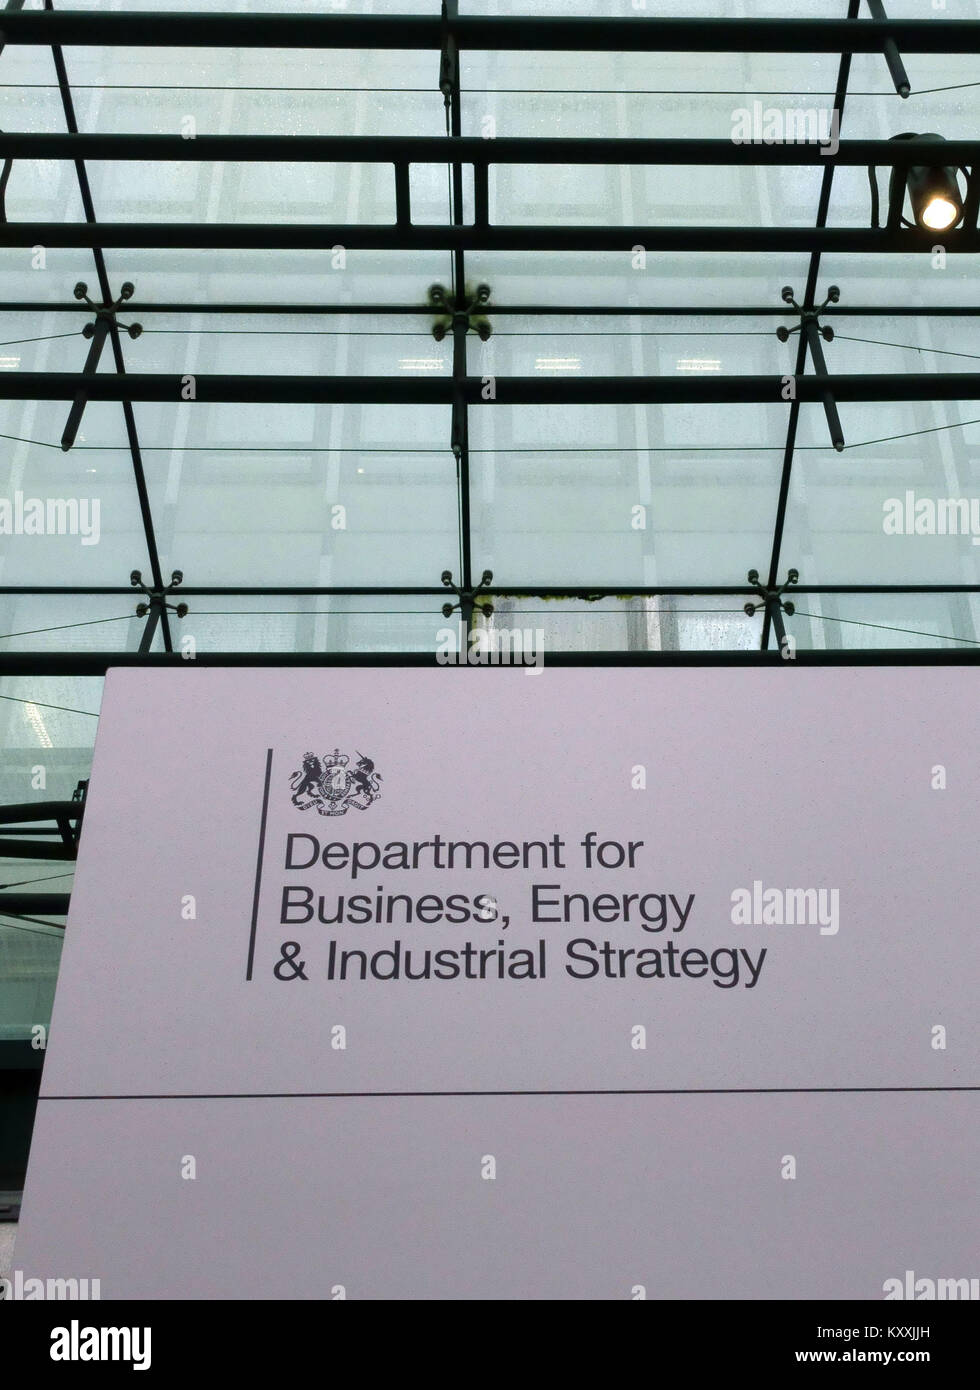 Ministère de l'économie, de l'énergie et de stratégie industrielle, Victoria, Londres Banque D'Images